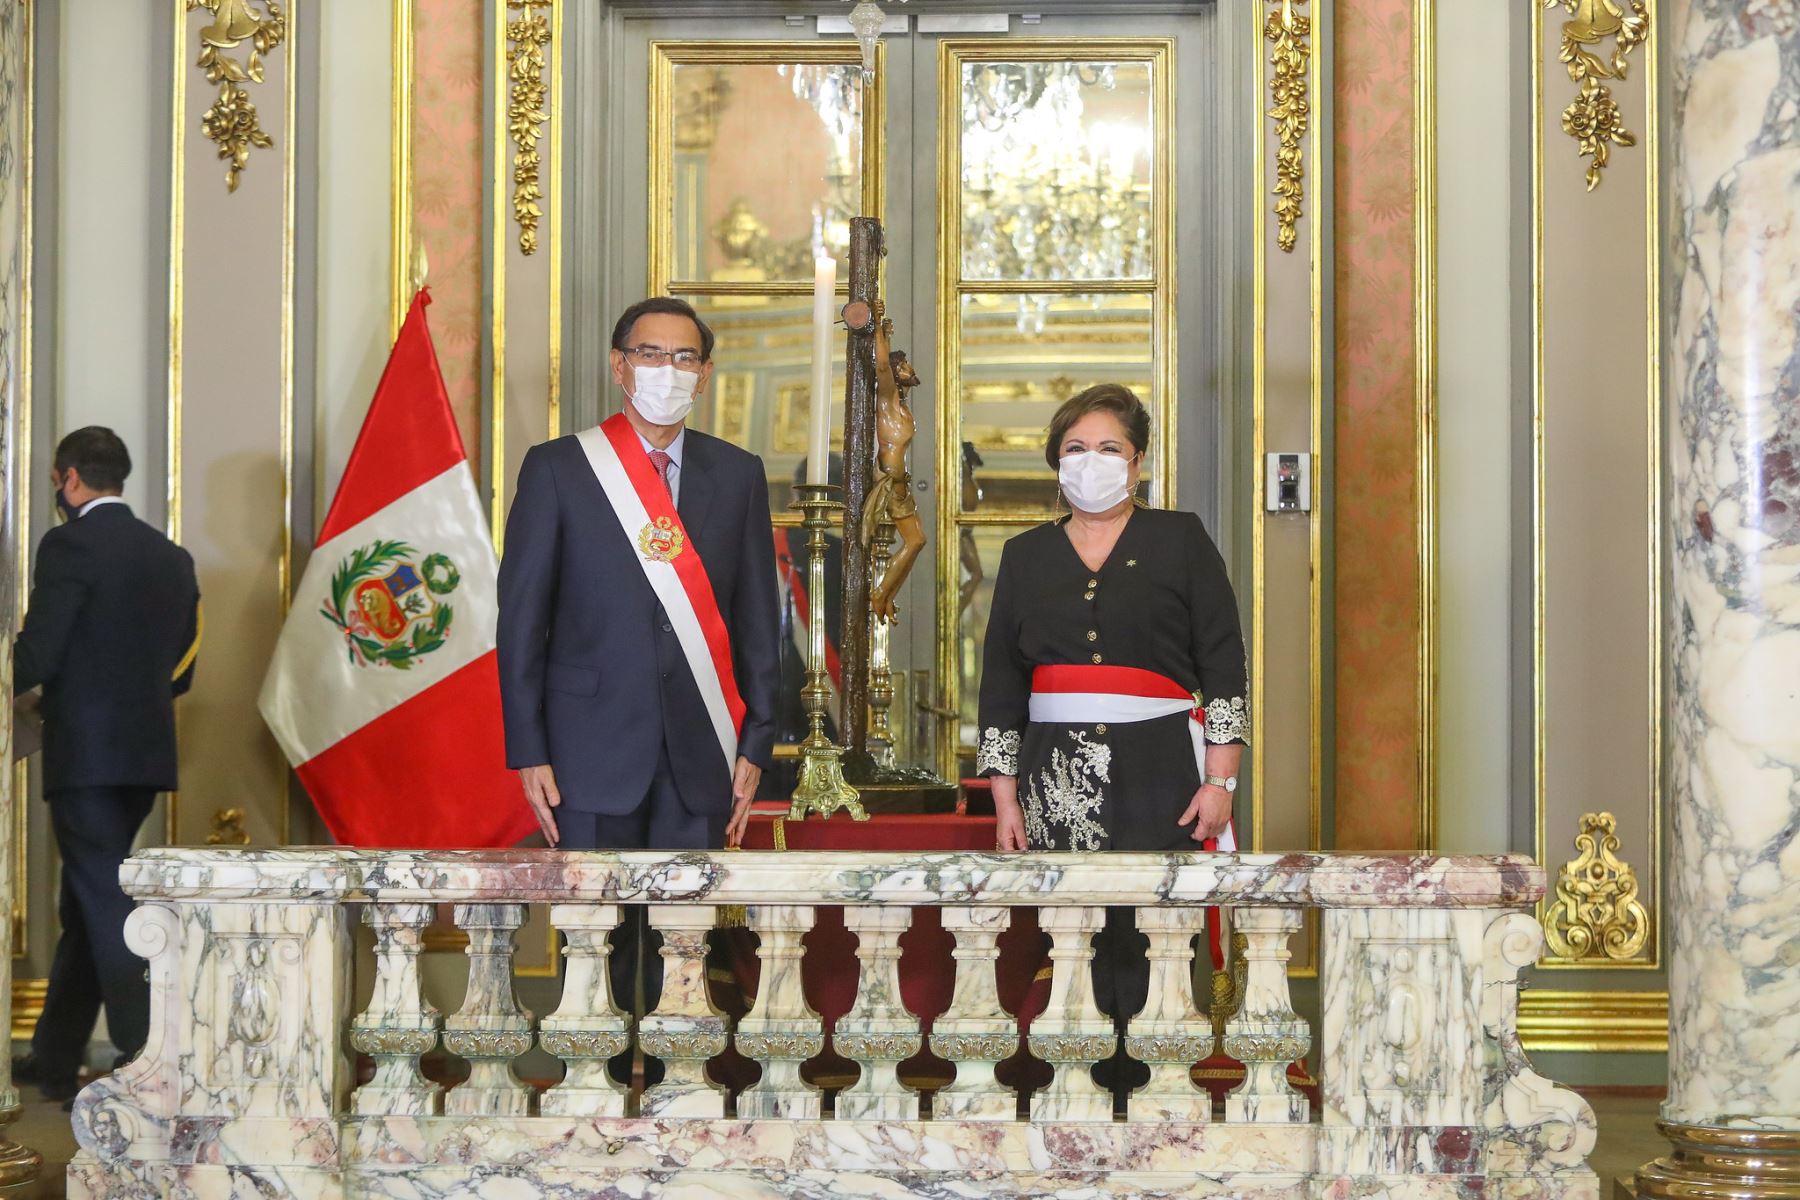 El presidente de la República, Martín Vizcarra, toma juramento a Rosario Sasieta como ministra de la Mujer y Poblaciones Vulnerables.

Foto: ANDINA/ Prensa Presidencia